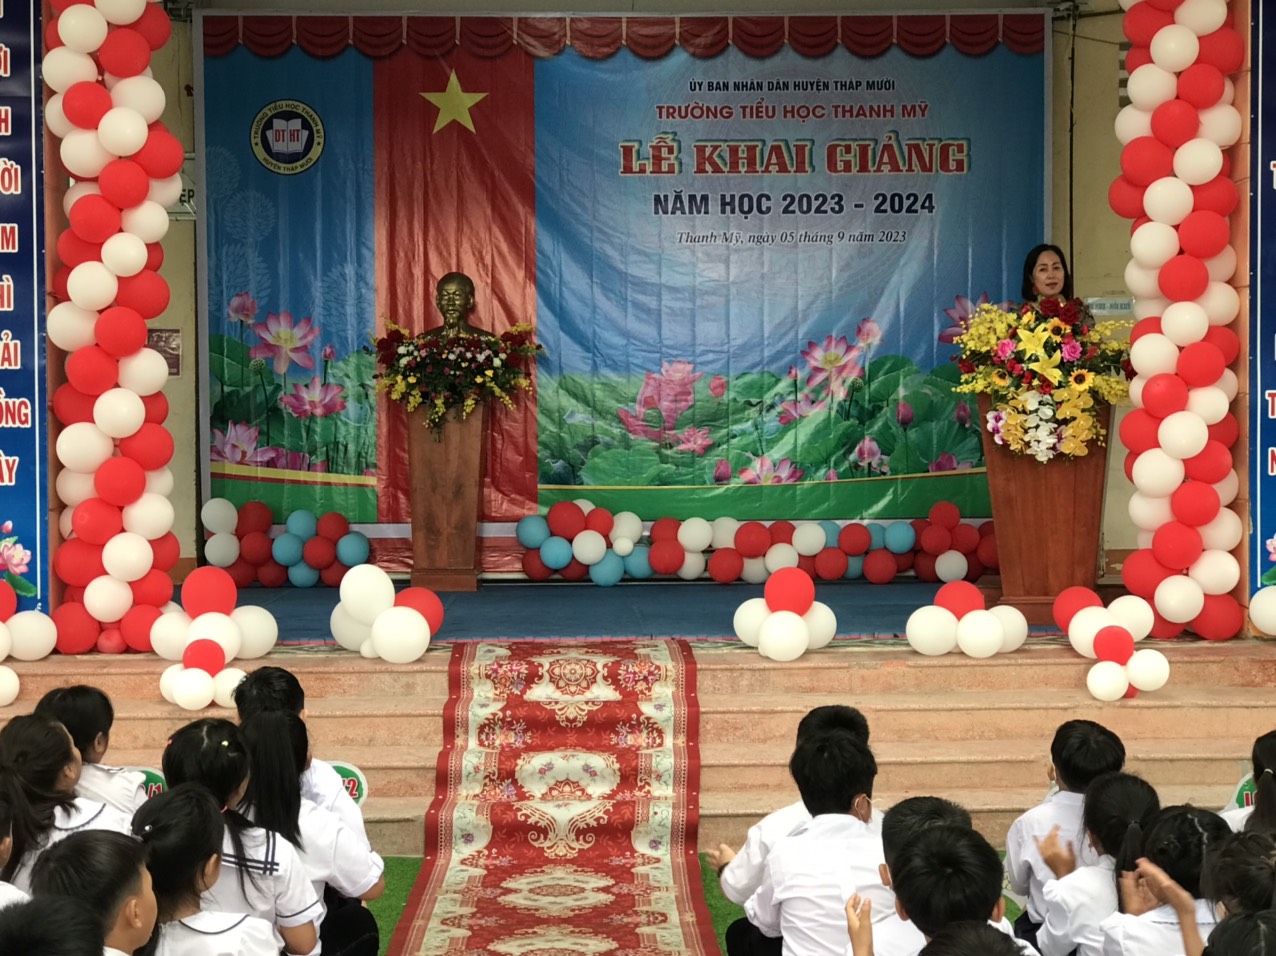 Cô Võ Hồng Hằng, Hiệu trưởng nhà trường phát biểu nhân lễ Khai giảng